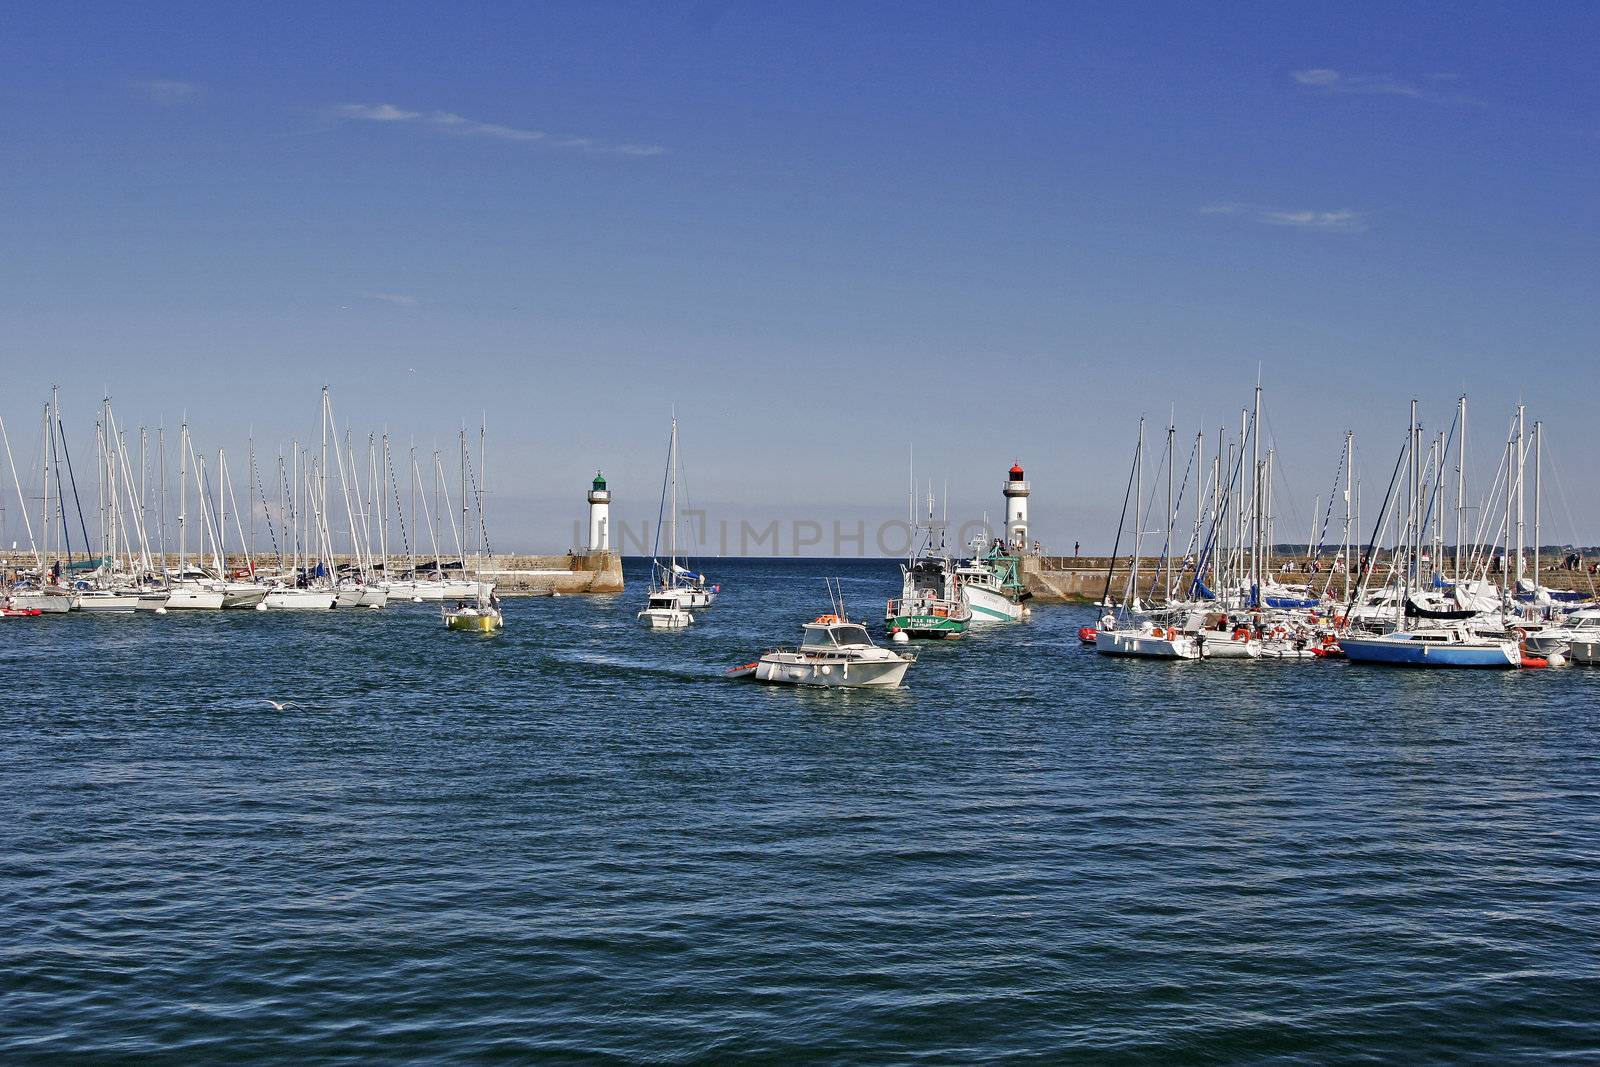 Port with lighthouses near Belle-Ile, Le Palais, Brittany, North France.
Belle-Ile, Le Palais, Hafen mit Leuchtturm.